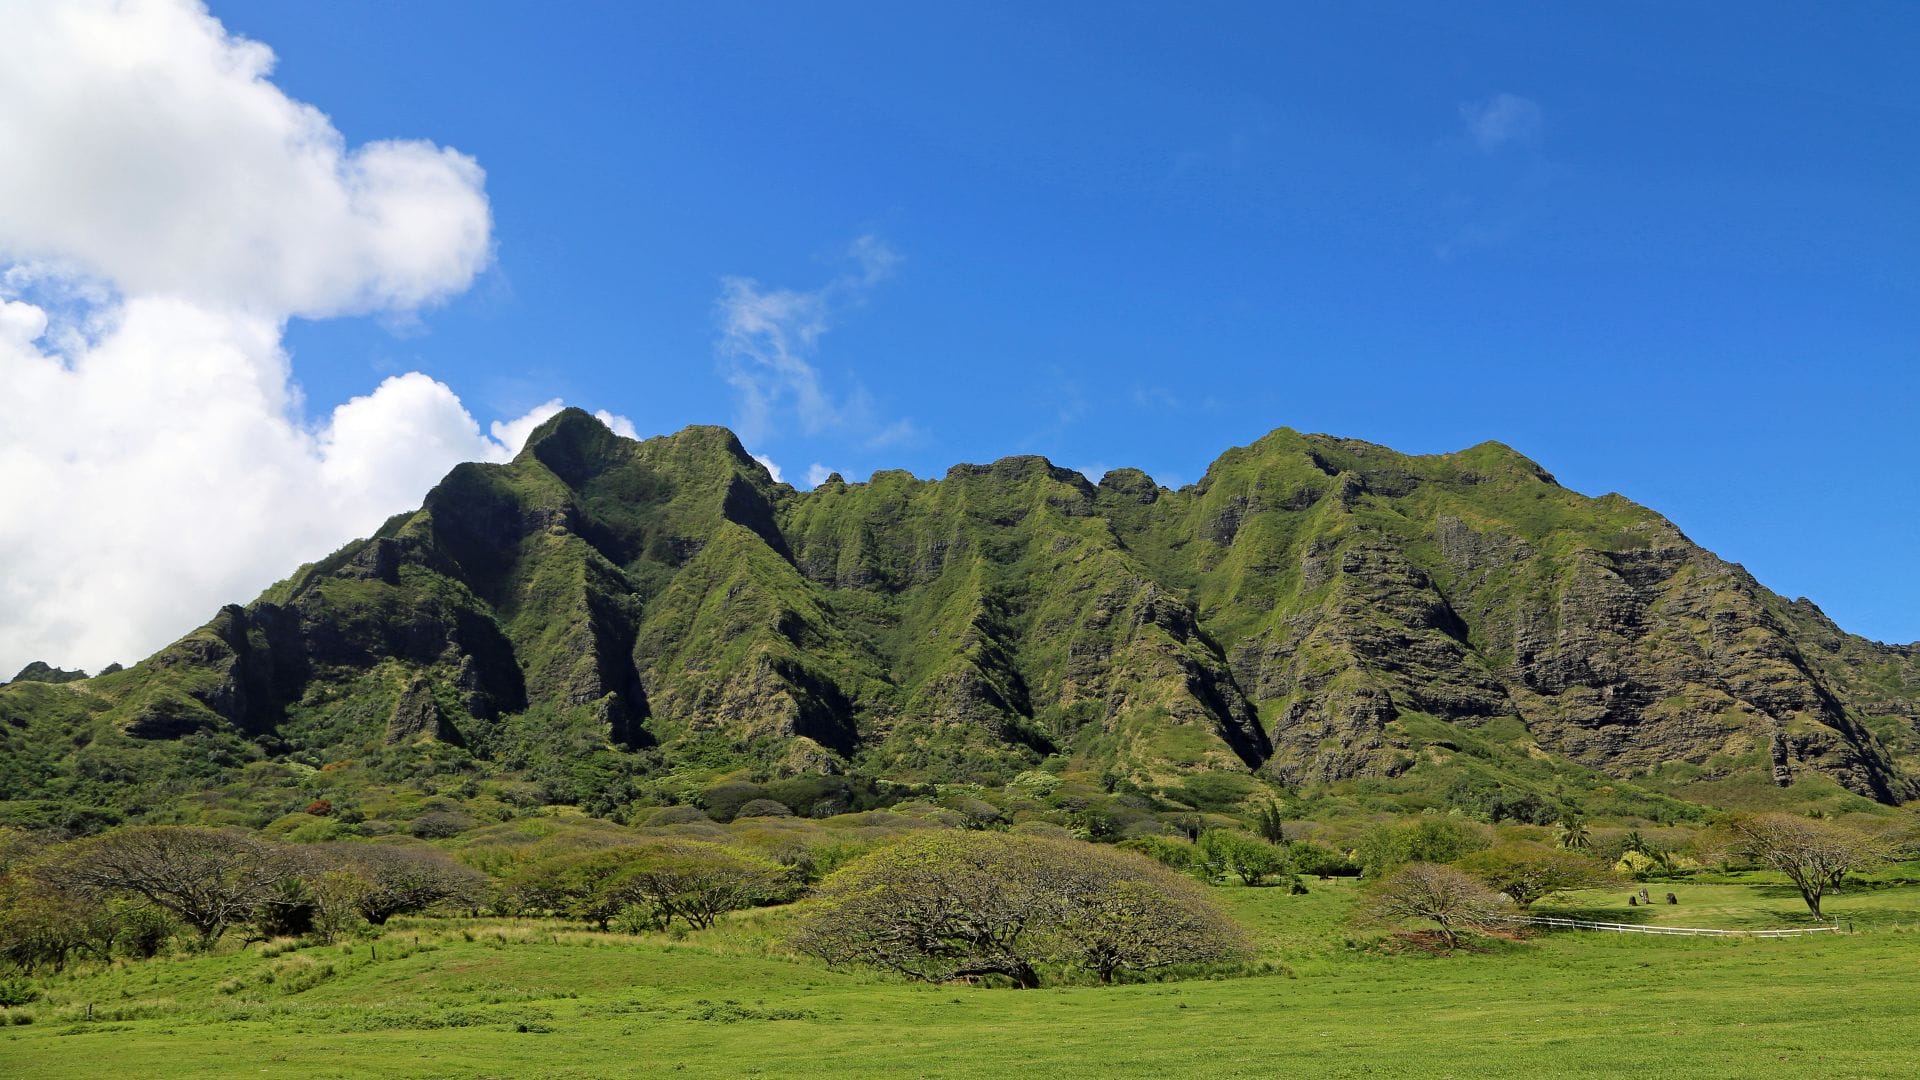 Kualoa Ranch top 10 things to do in Oahu